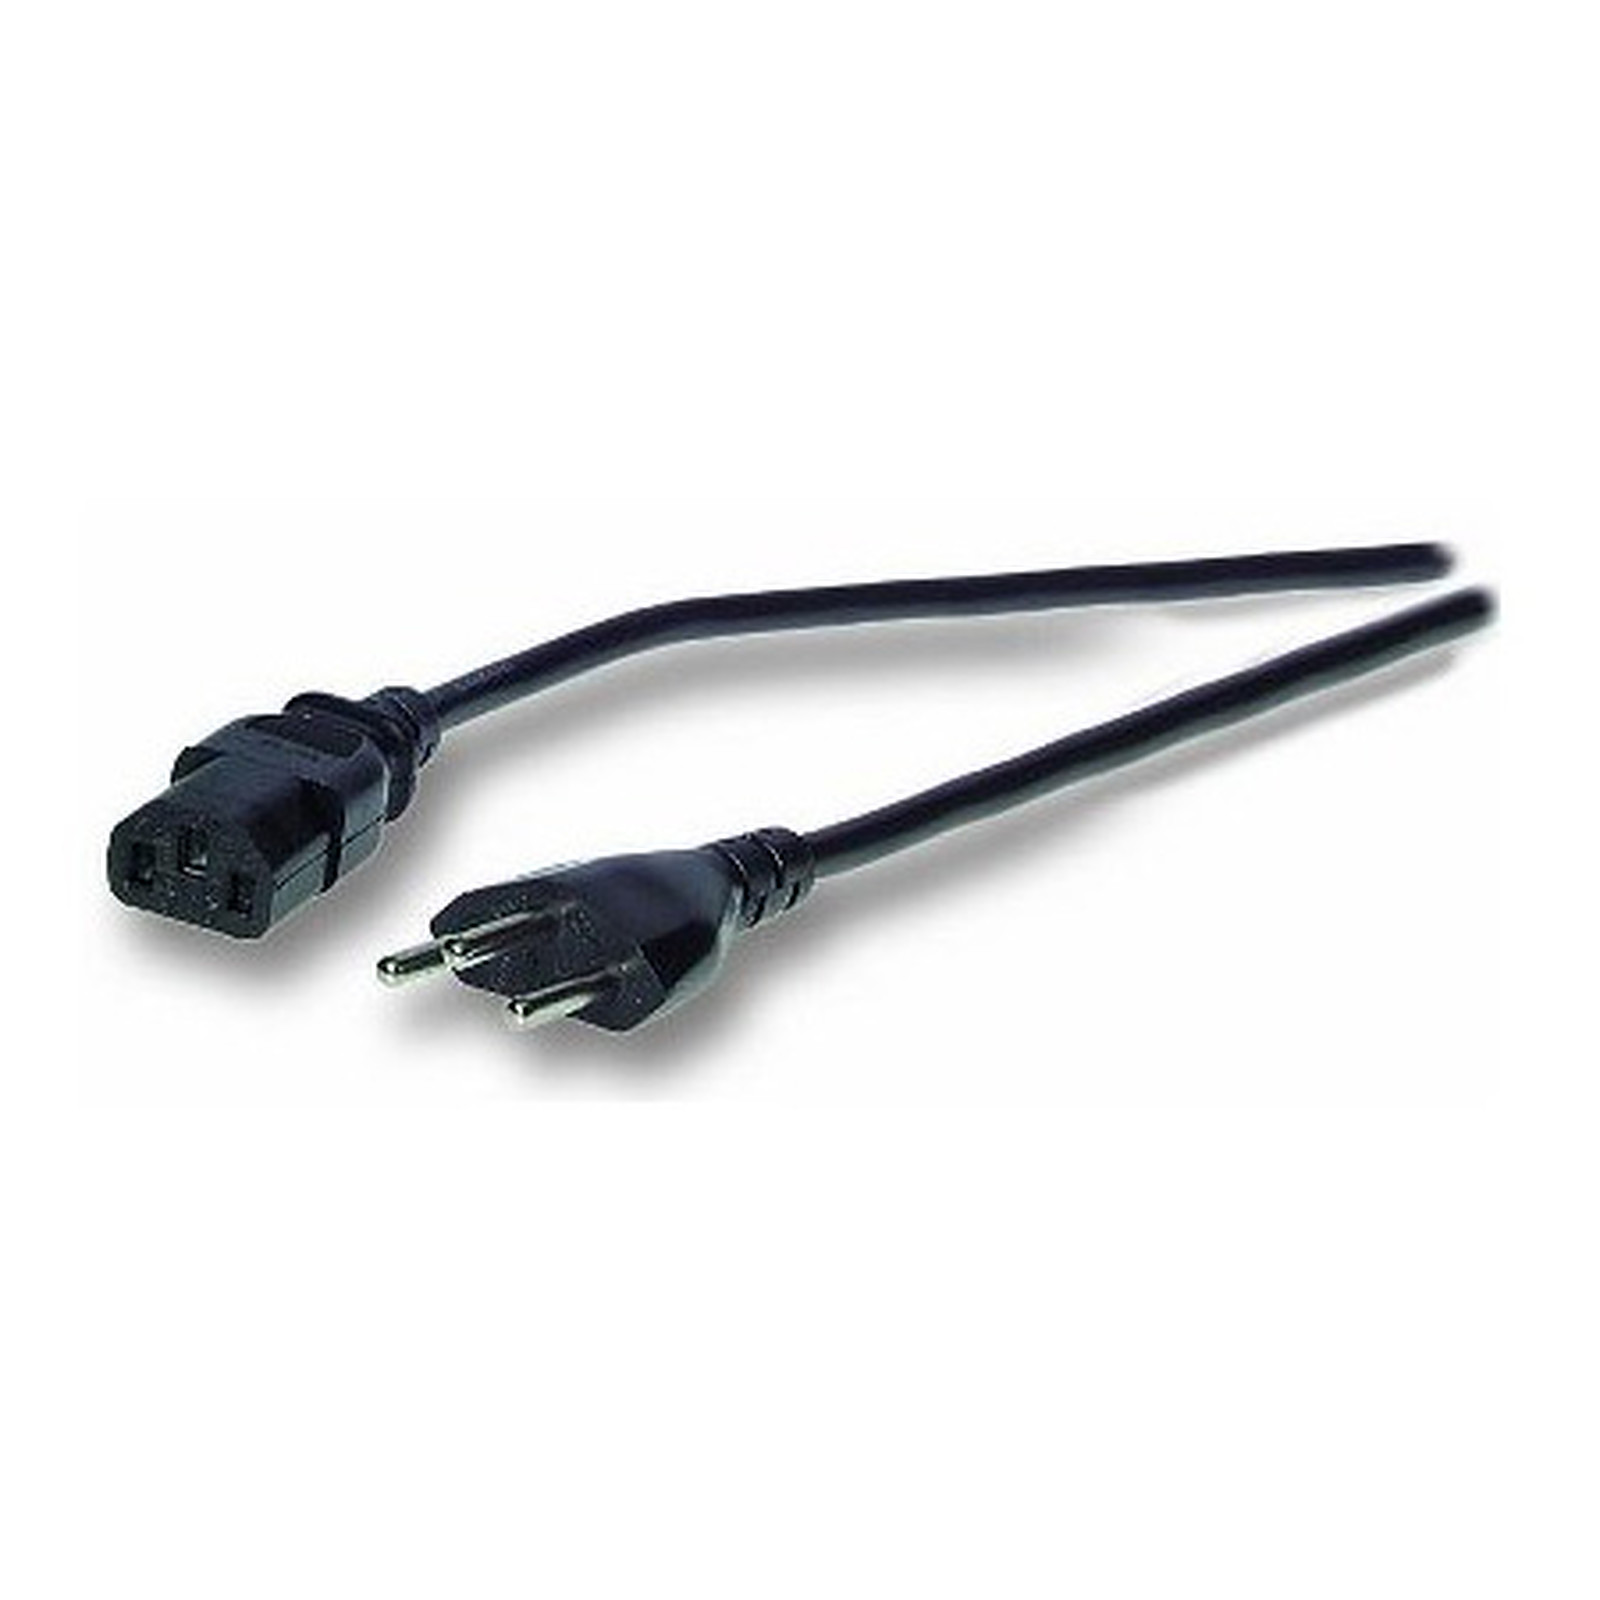 Cable d'alimentation pour PC, moniteur et onduleur Suisse (1.8 m) - Cable Secteur Generique